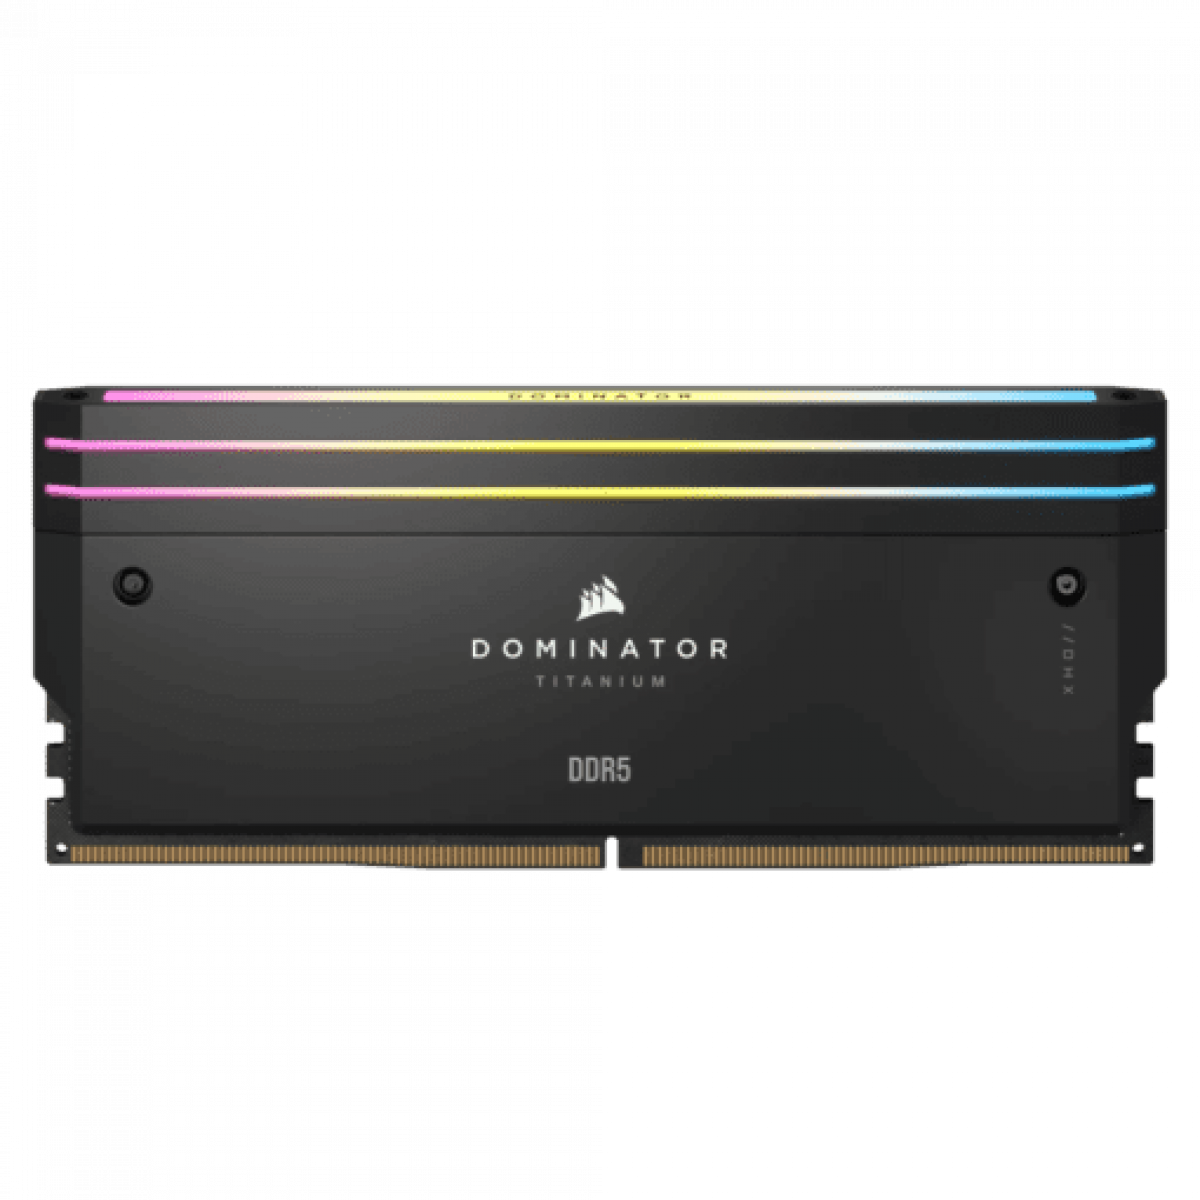 CORSAIR DOMINATOR TITANIUM Black DDR5, 6400MT/s 32GB 2x16GB DIMM, XMP 3.0, RGB LED, 1.4V